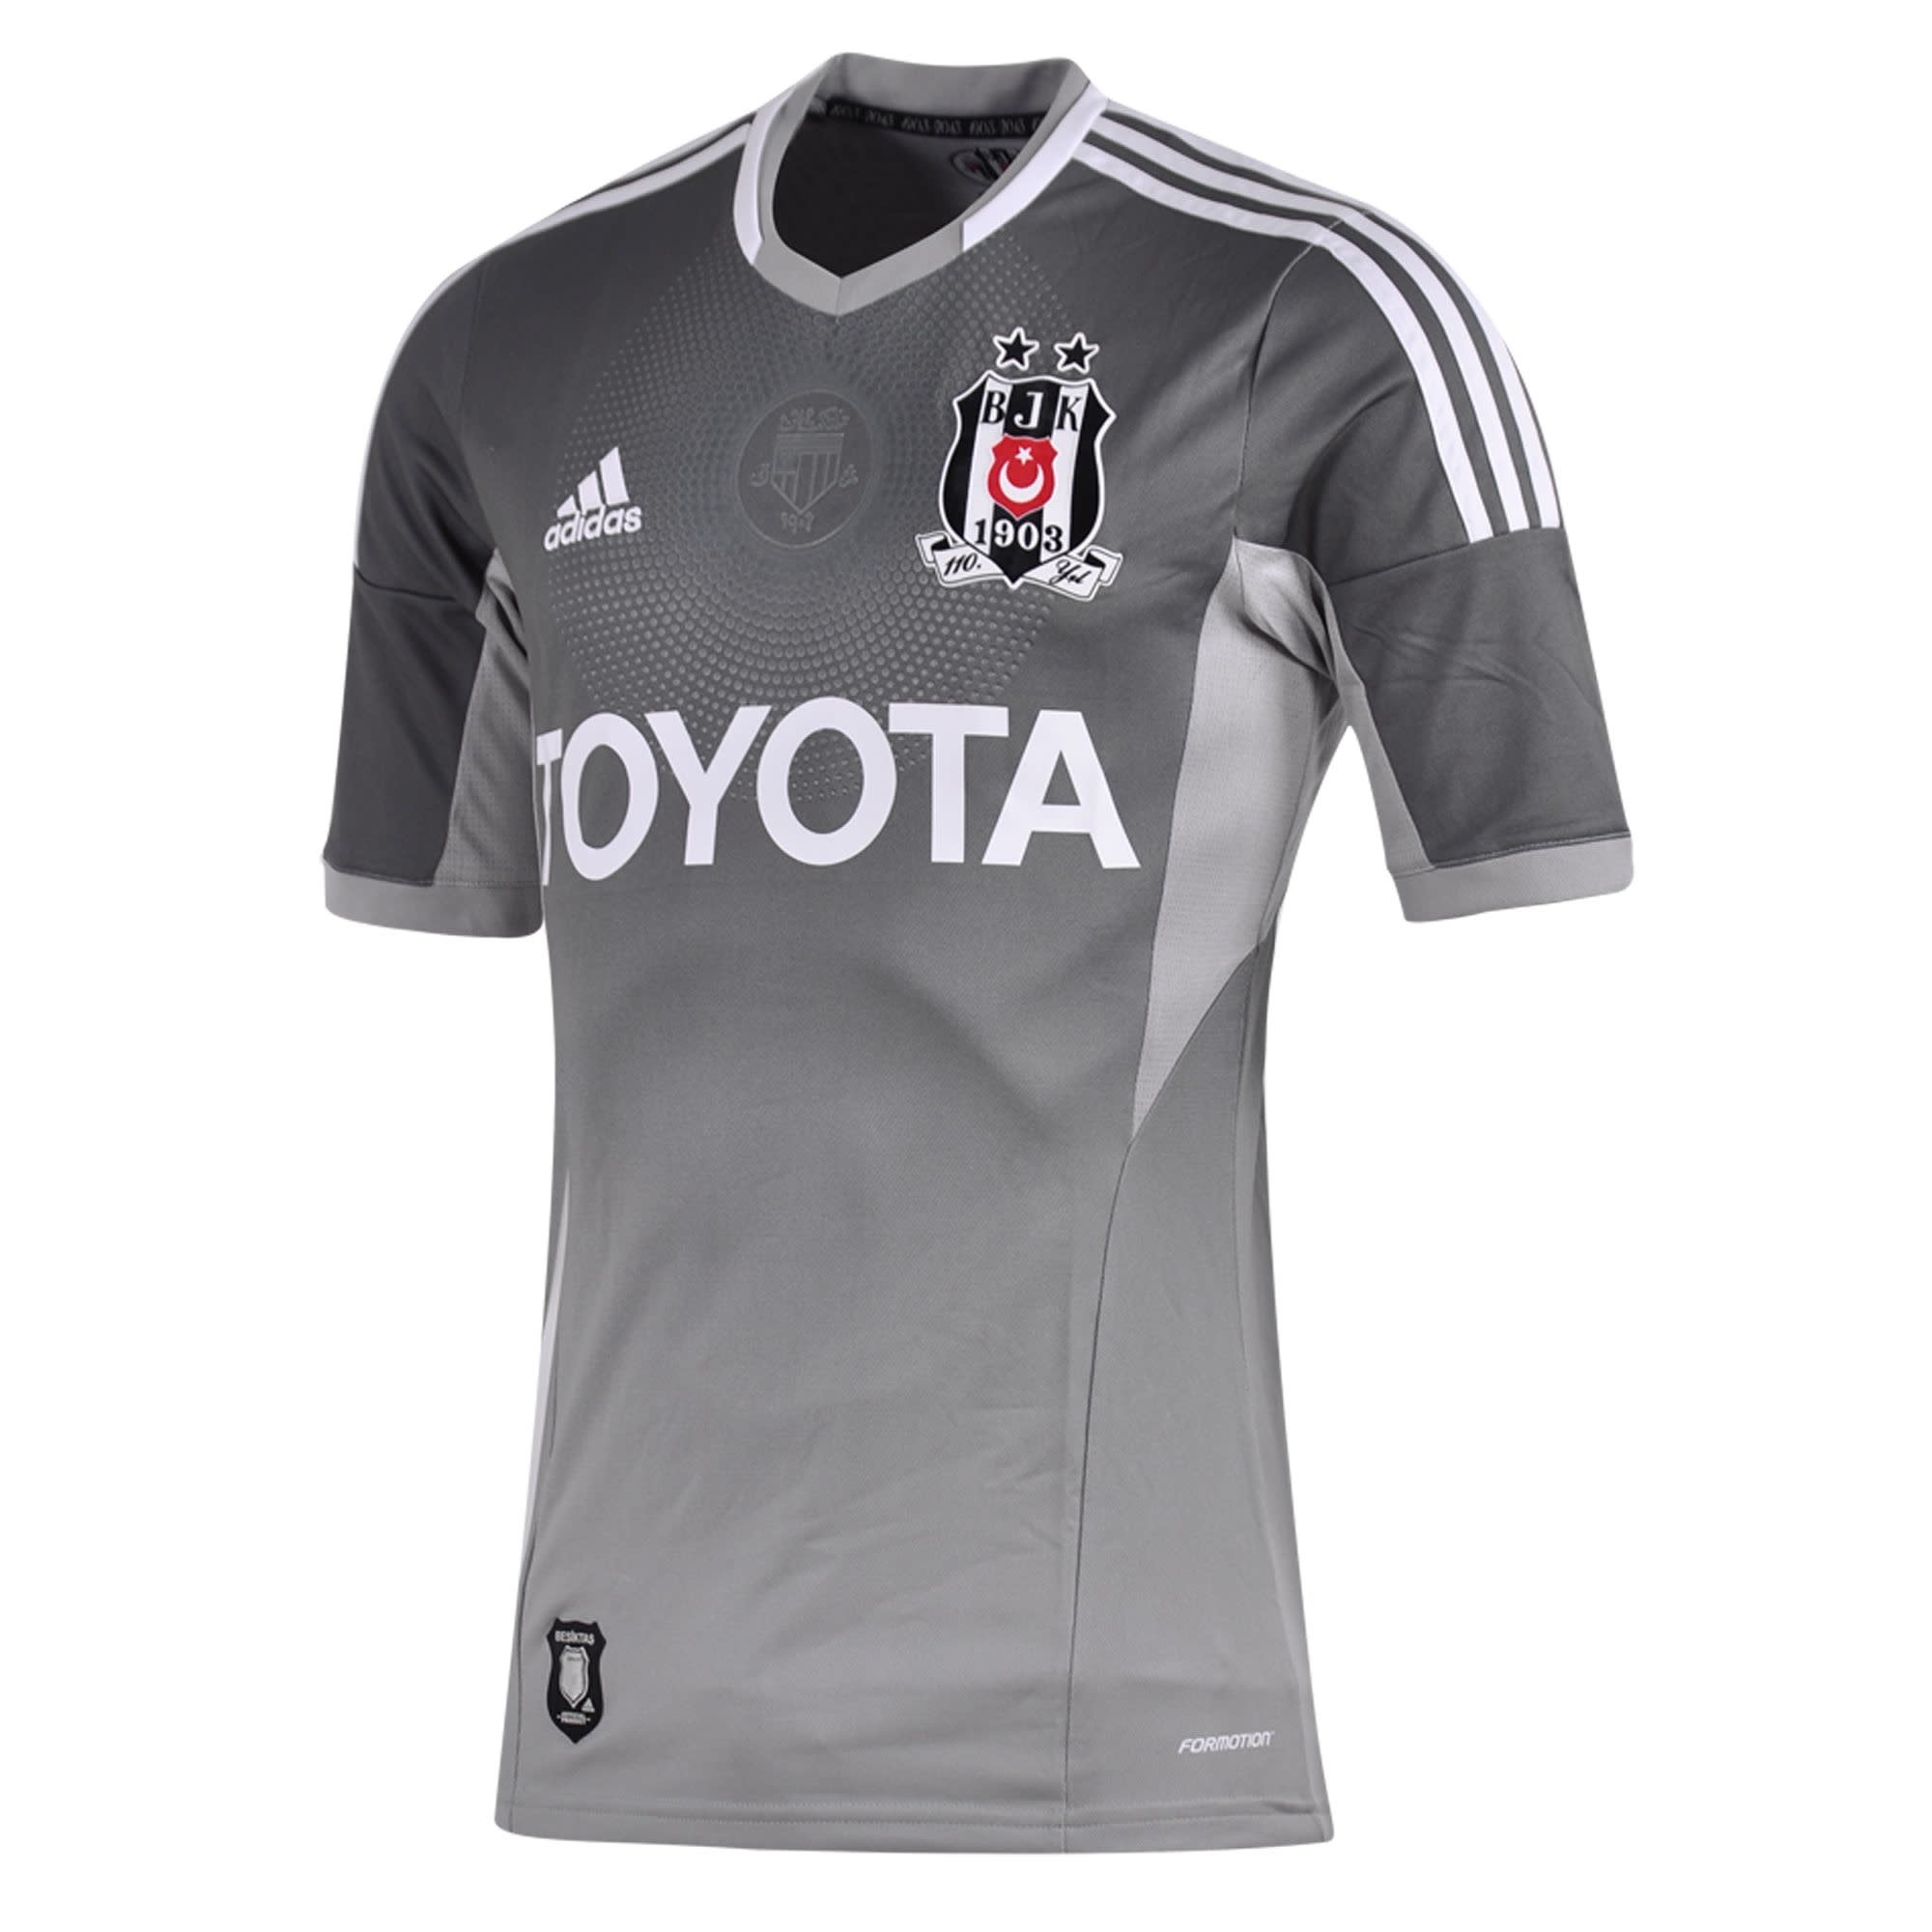 Besiktas Home football shirt 2013 - 2014.